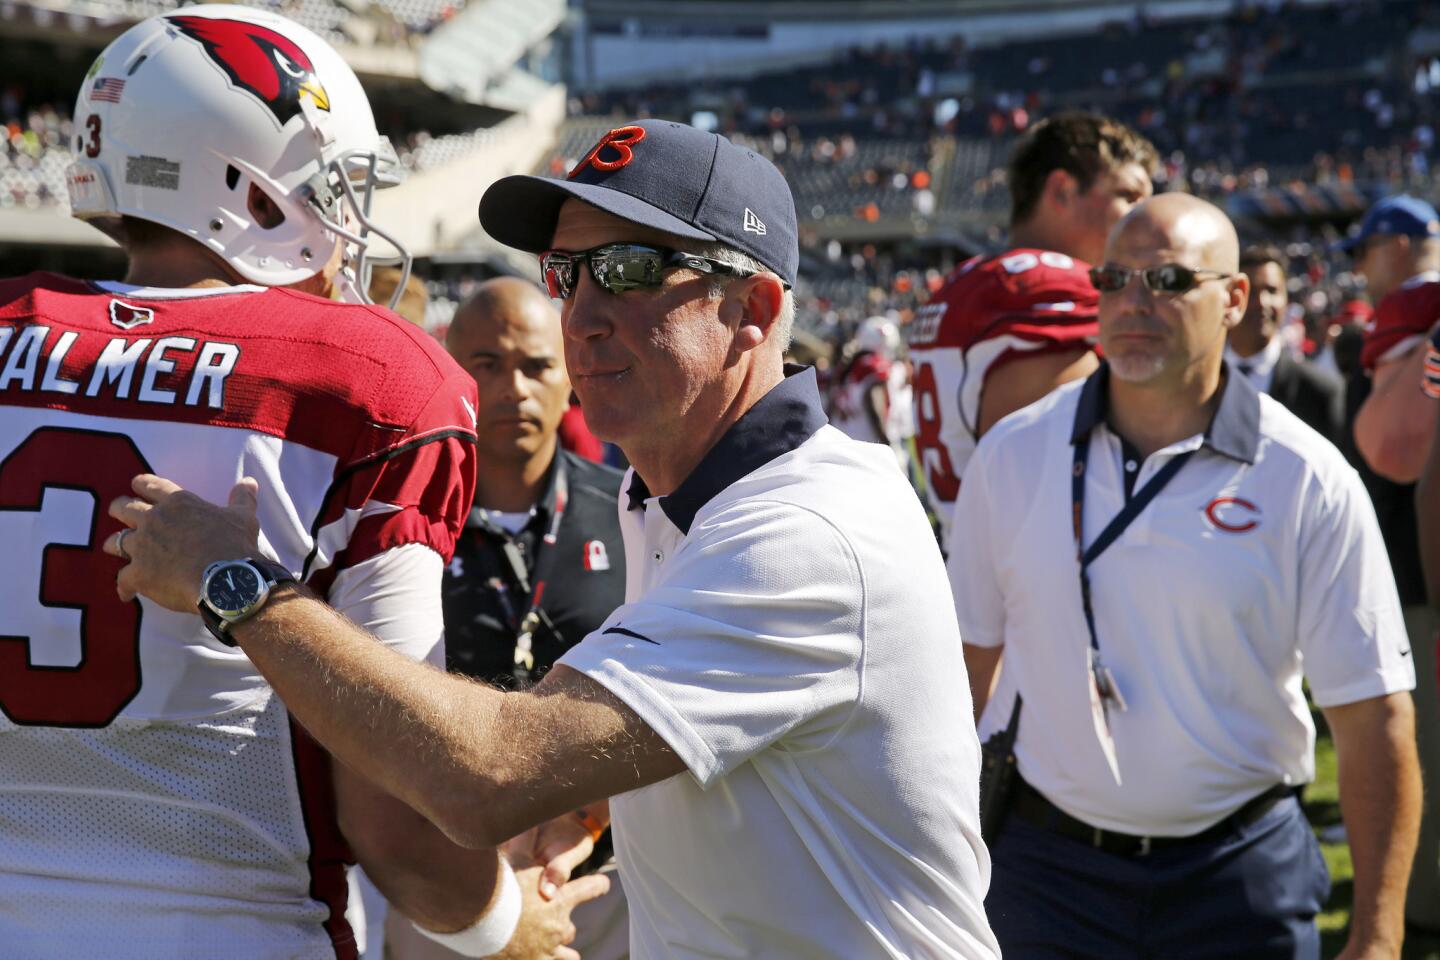 Bears coach John Fox congratulates Cardinals quarterback Carson Palmer following the game.